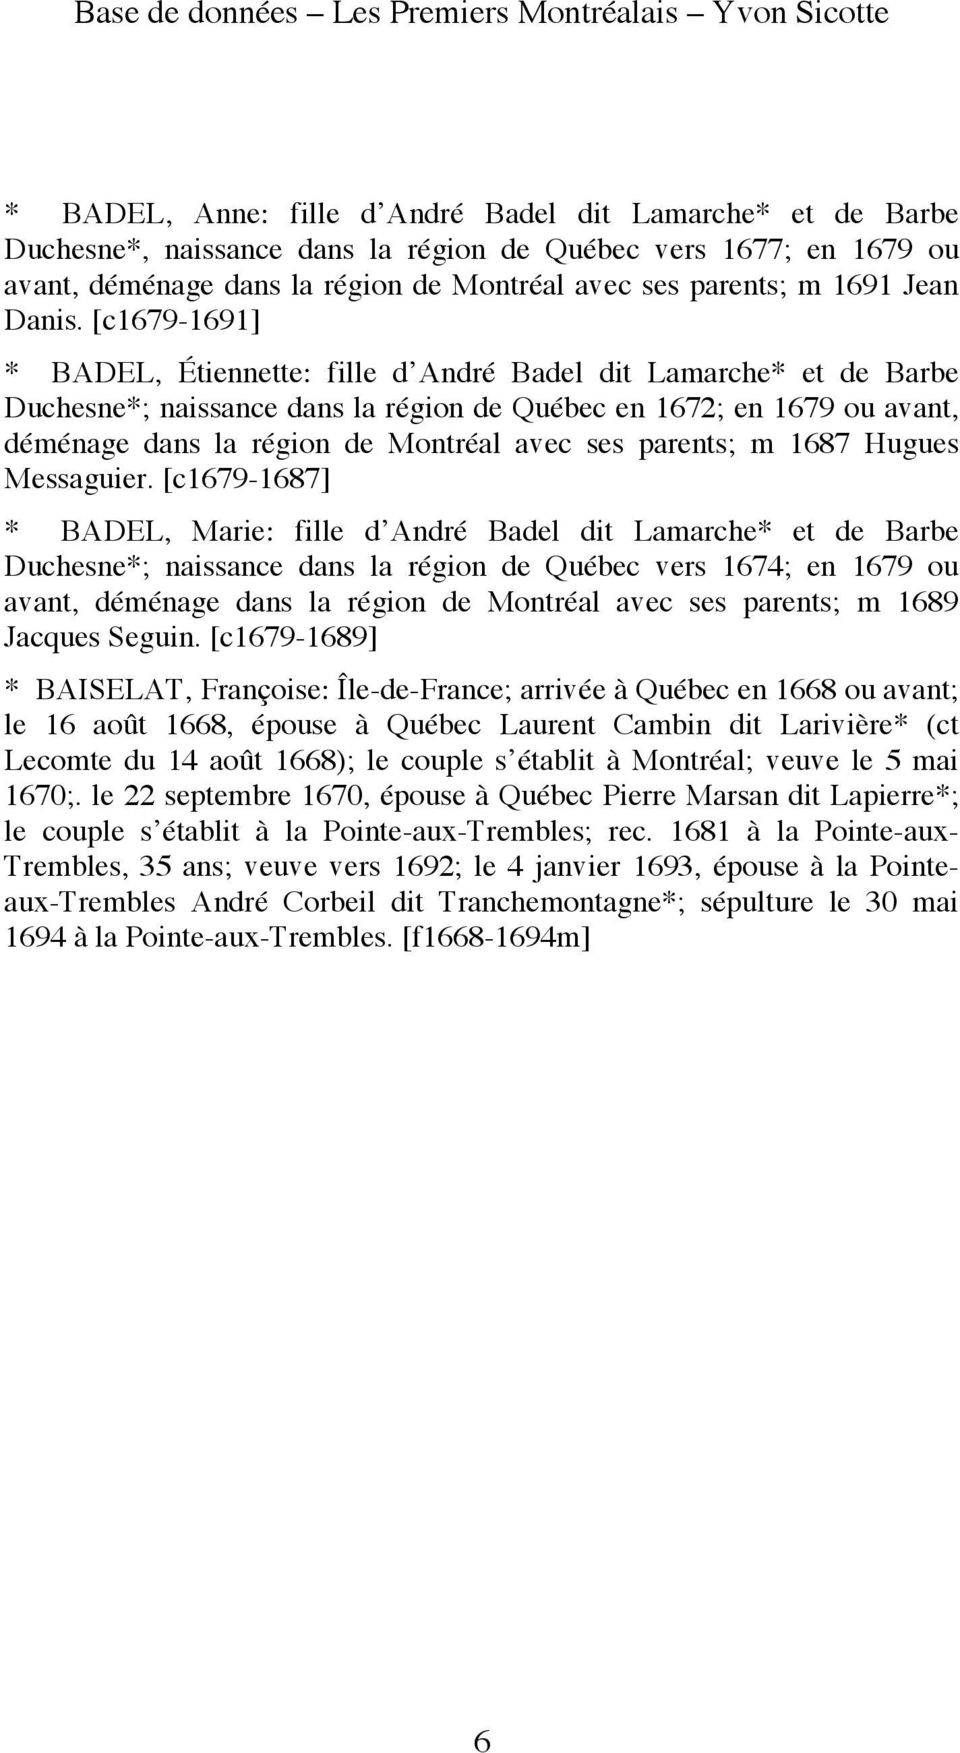 [c1679-1691] * BADEL, Étiennette: fille d André Badel dit Lamarche* et de Barbe Duchesne*; naissance dans la région de Québec en 1672; en 1679 ou avant, déménage dans la région de Montréal avec ses